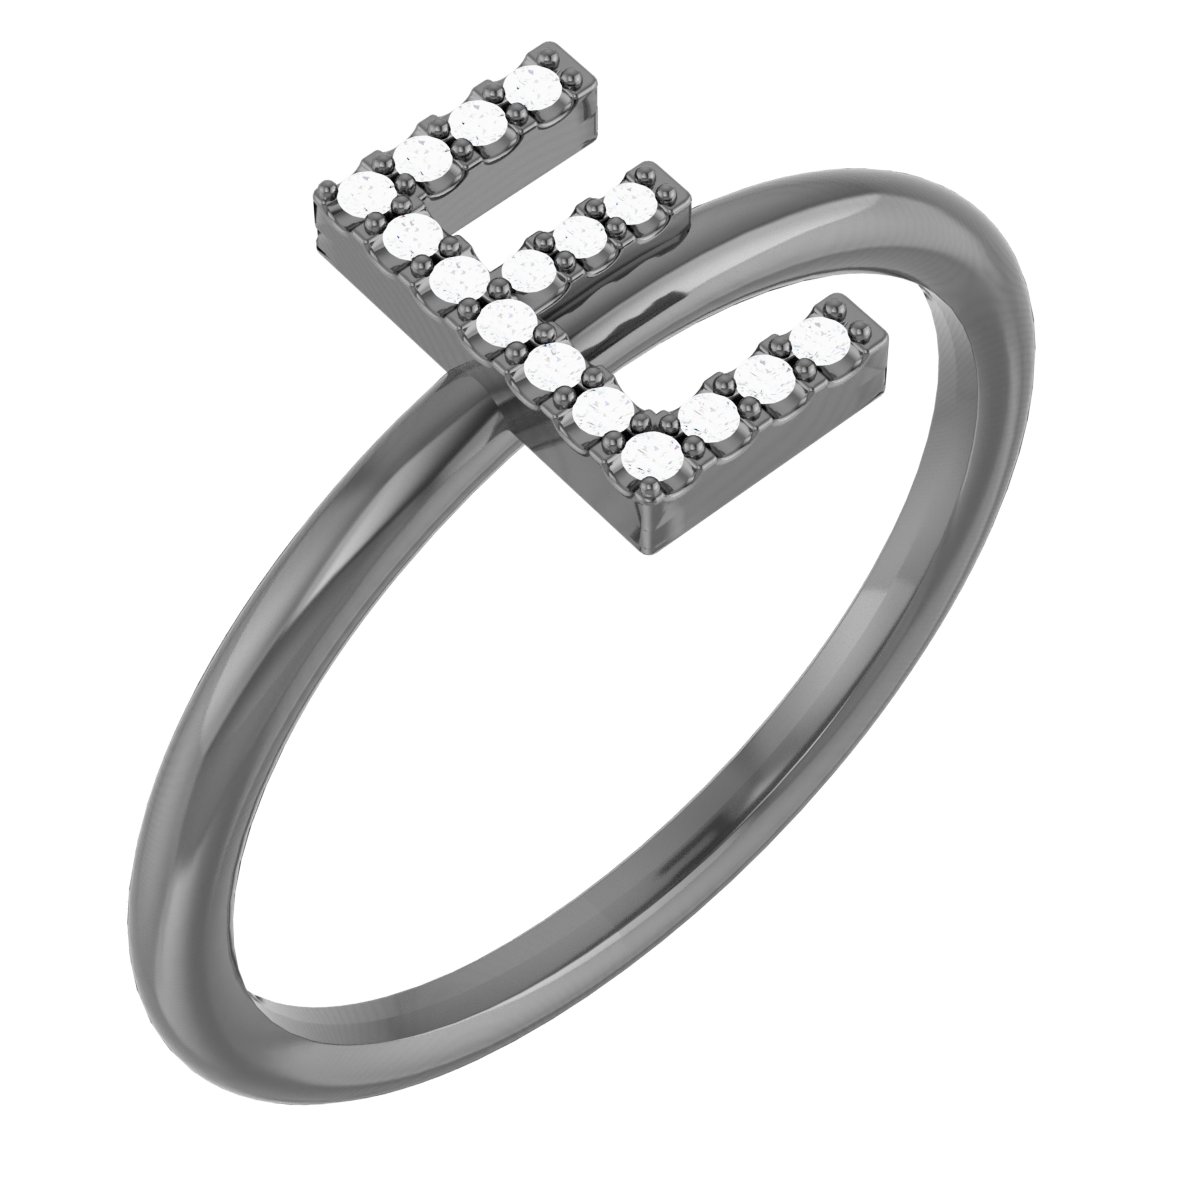 14K White .06 CTW Diamond Initial E Ring Ref. 15158577